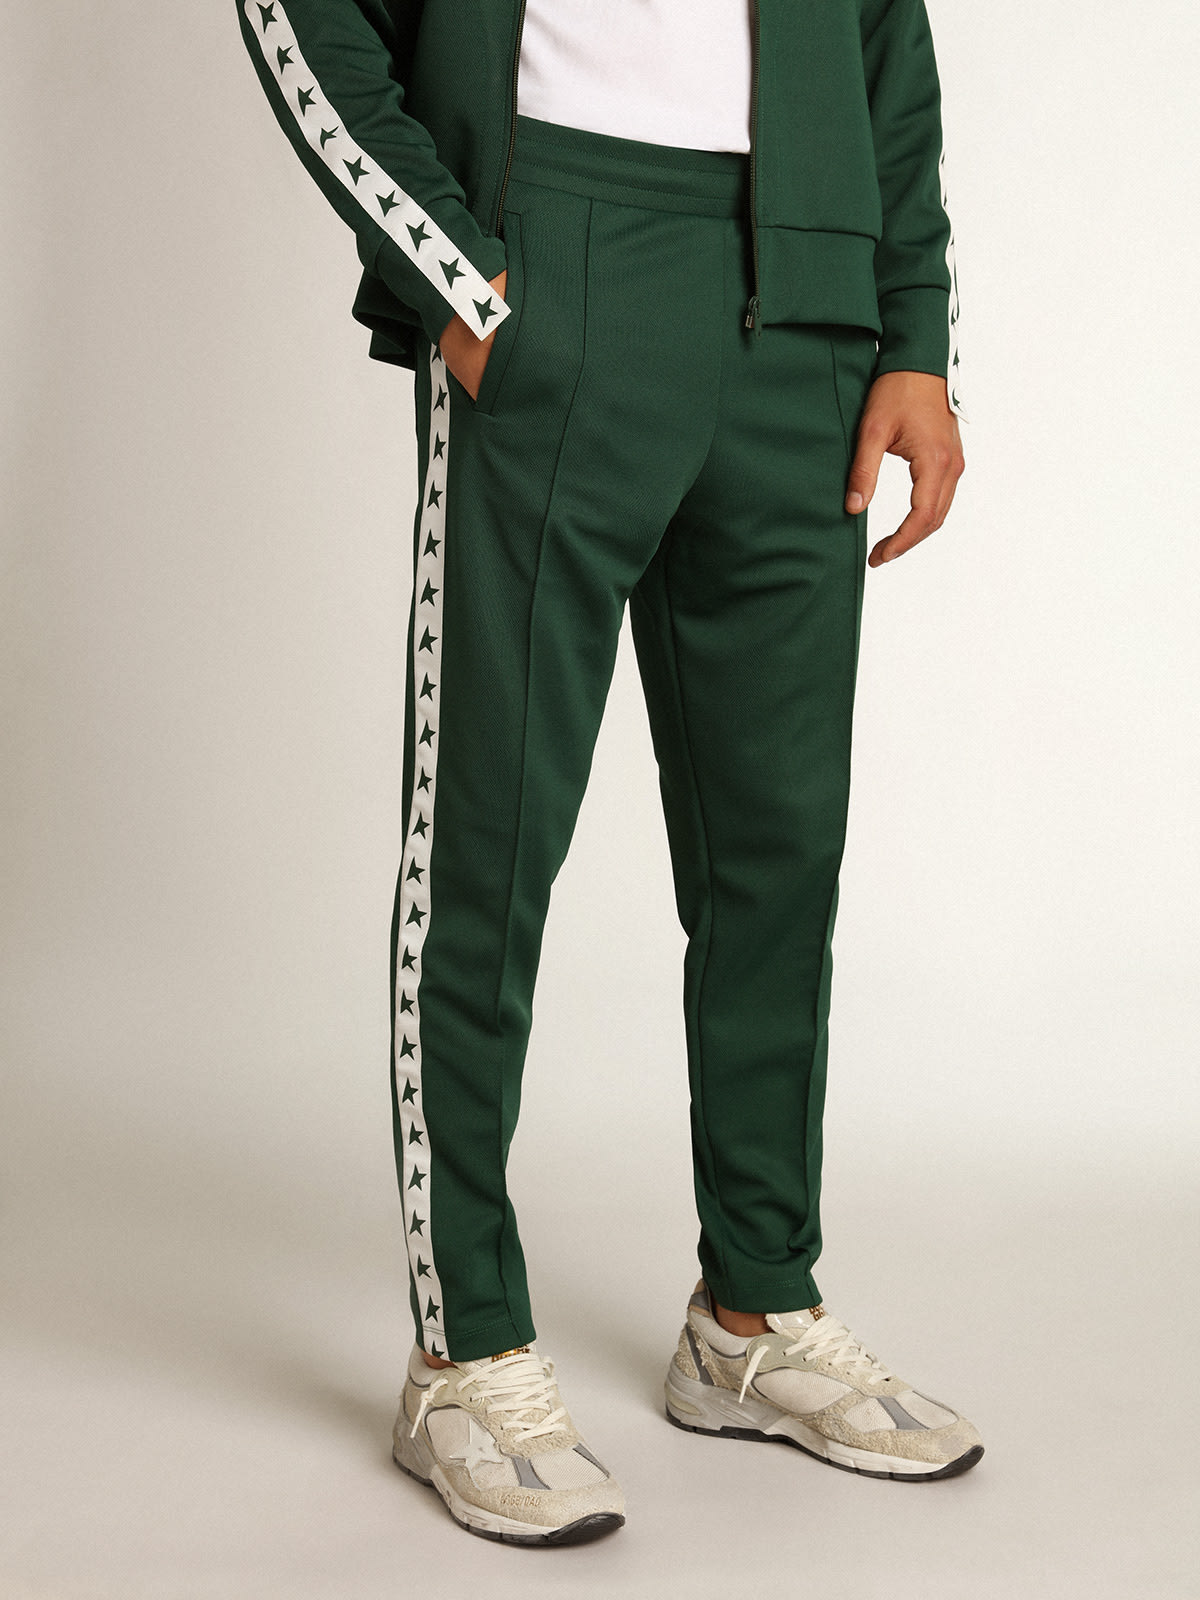 Golden Goose - Pantalon de jogging homme couleur vert brillant in 